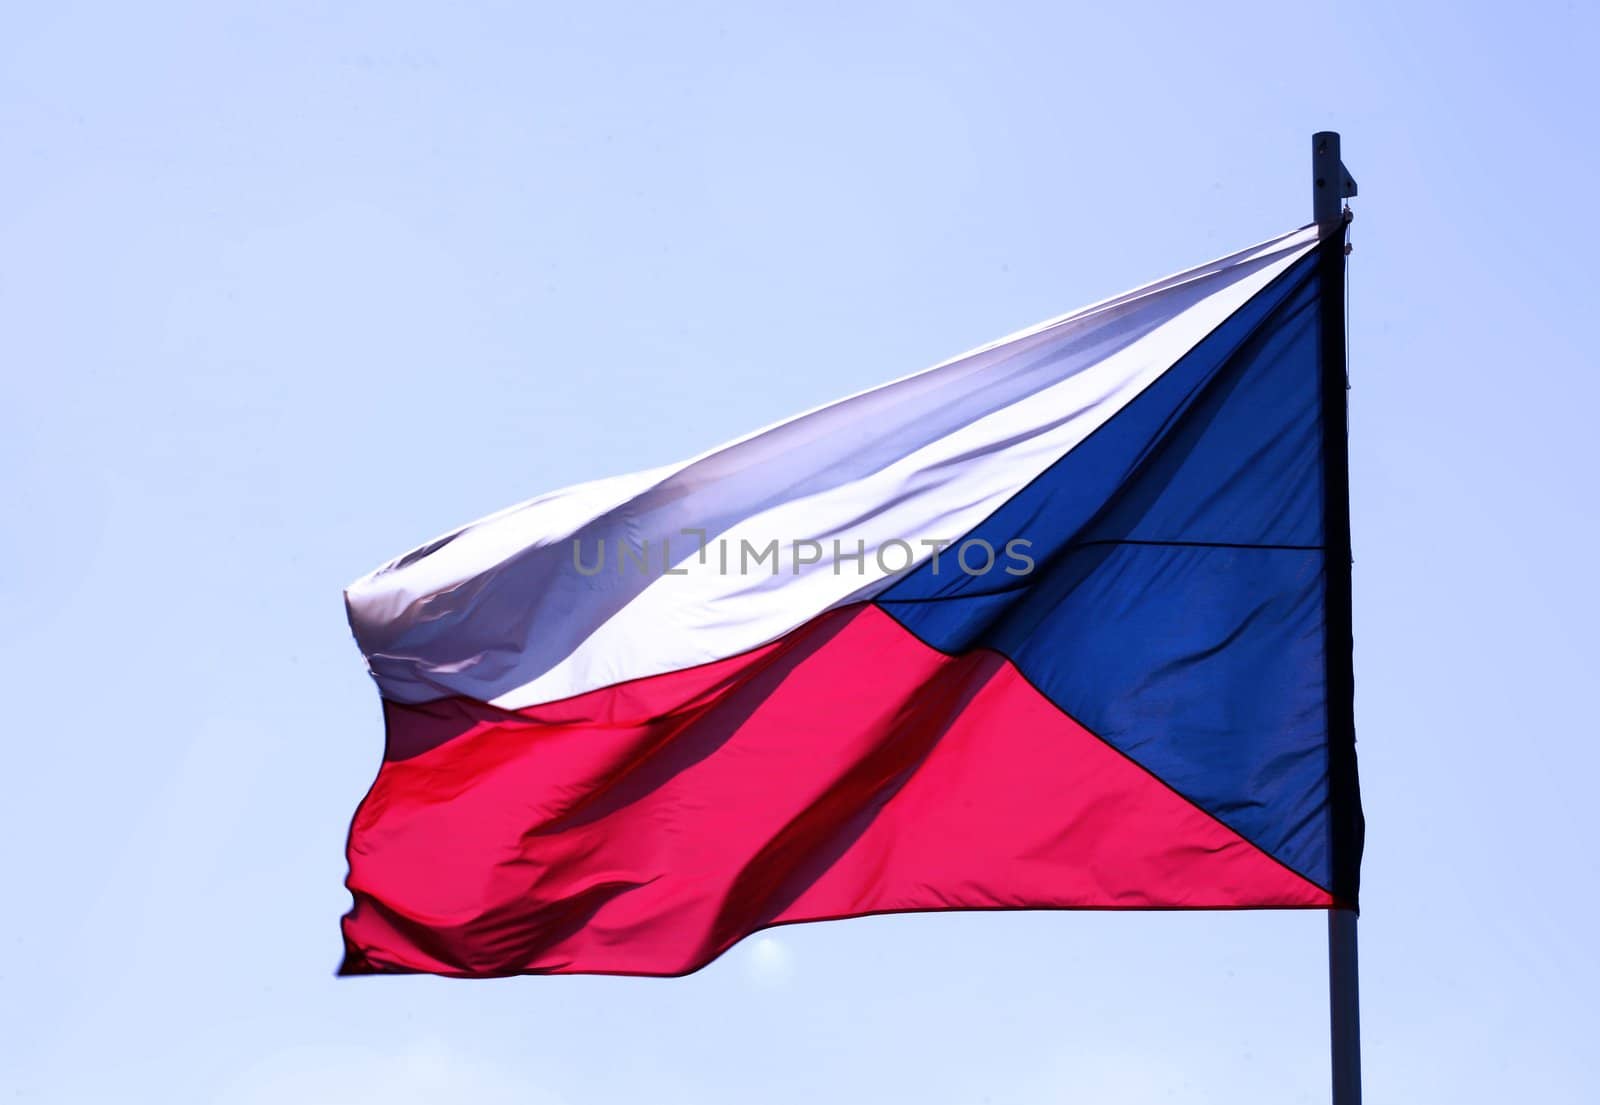 Flag of Czech republic blowing on blue sky by haak78